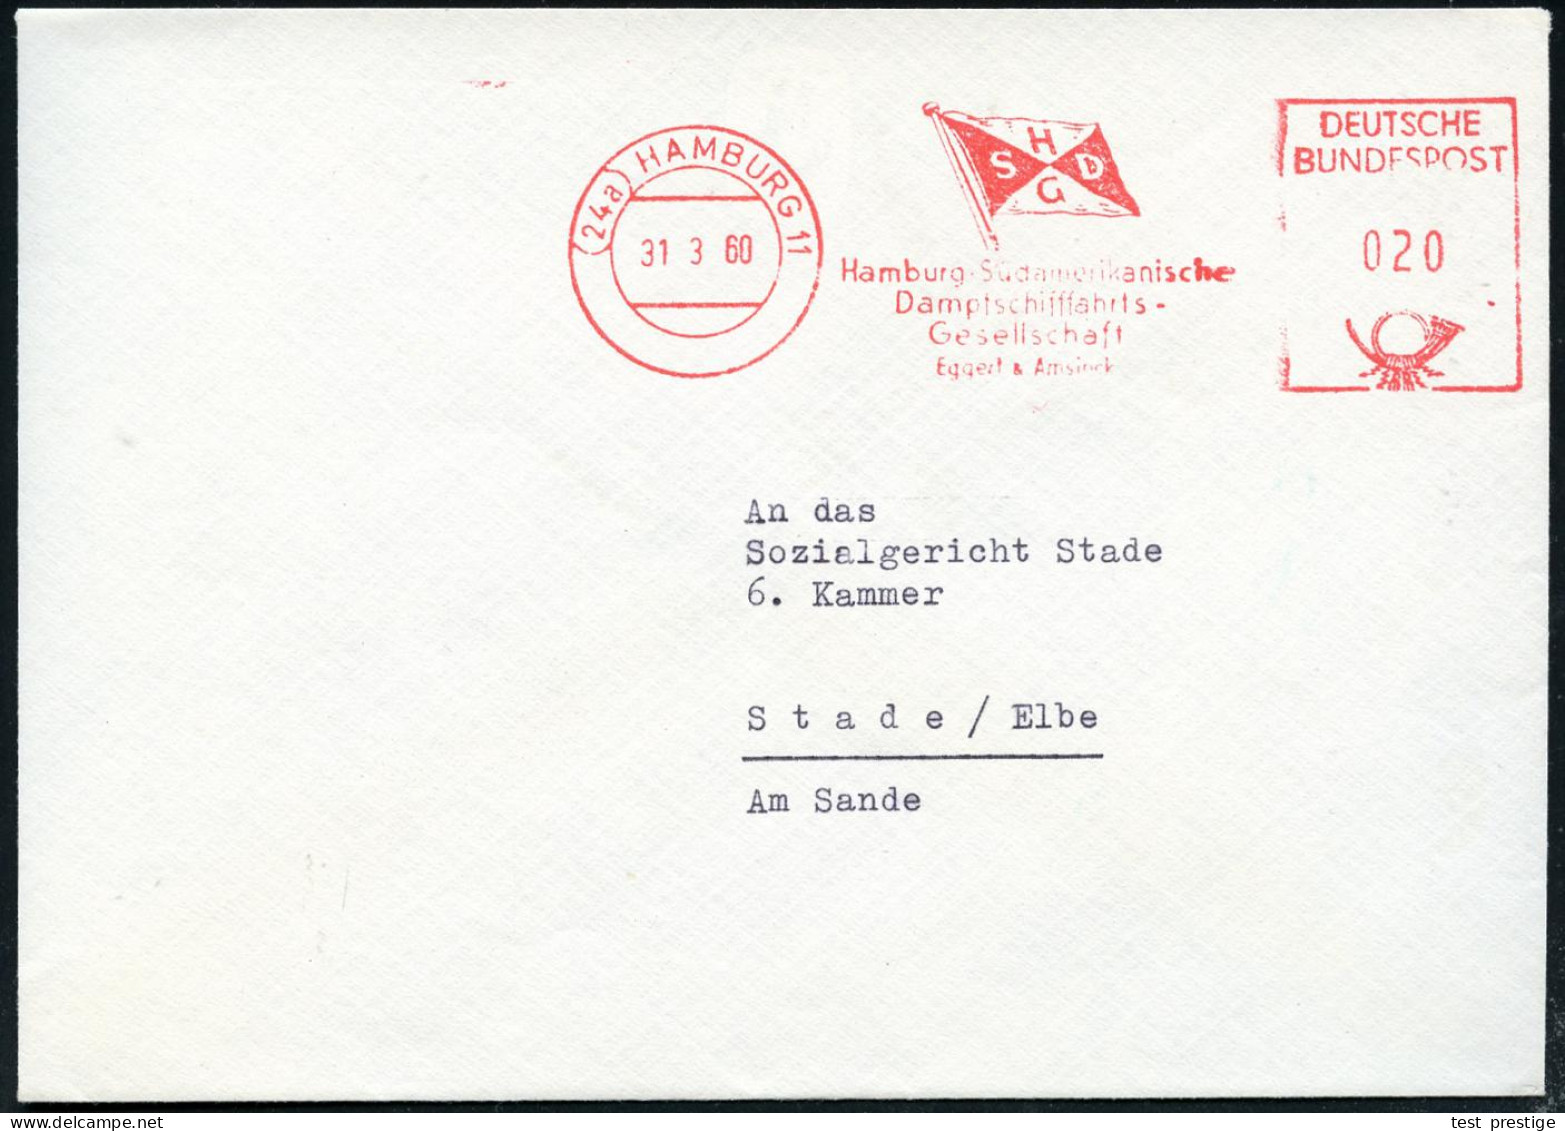 (24a) HAMBURG 11/ HSDG/ Hamburg-Südamerikanische/ Dampfschiffahrts/ Ges. 1960 (31.3.) AFS Postalia (Reederei-Flagge) Rs. - Marítimo